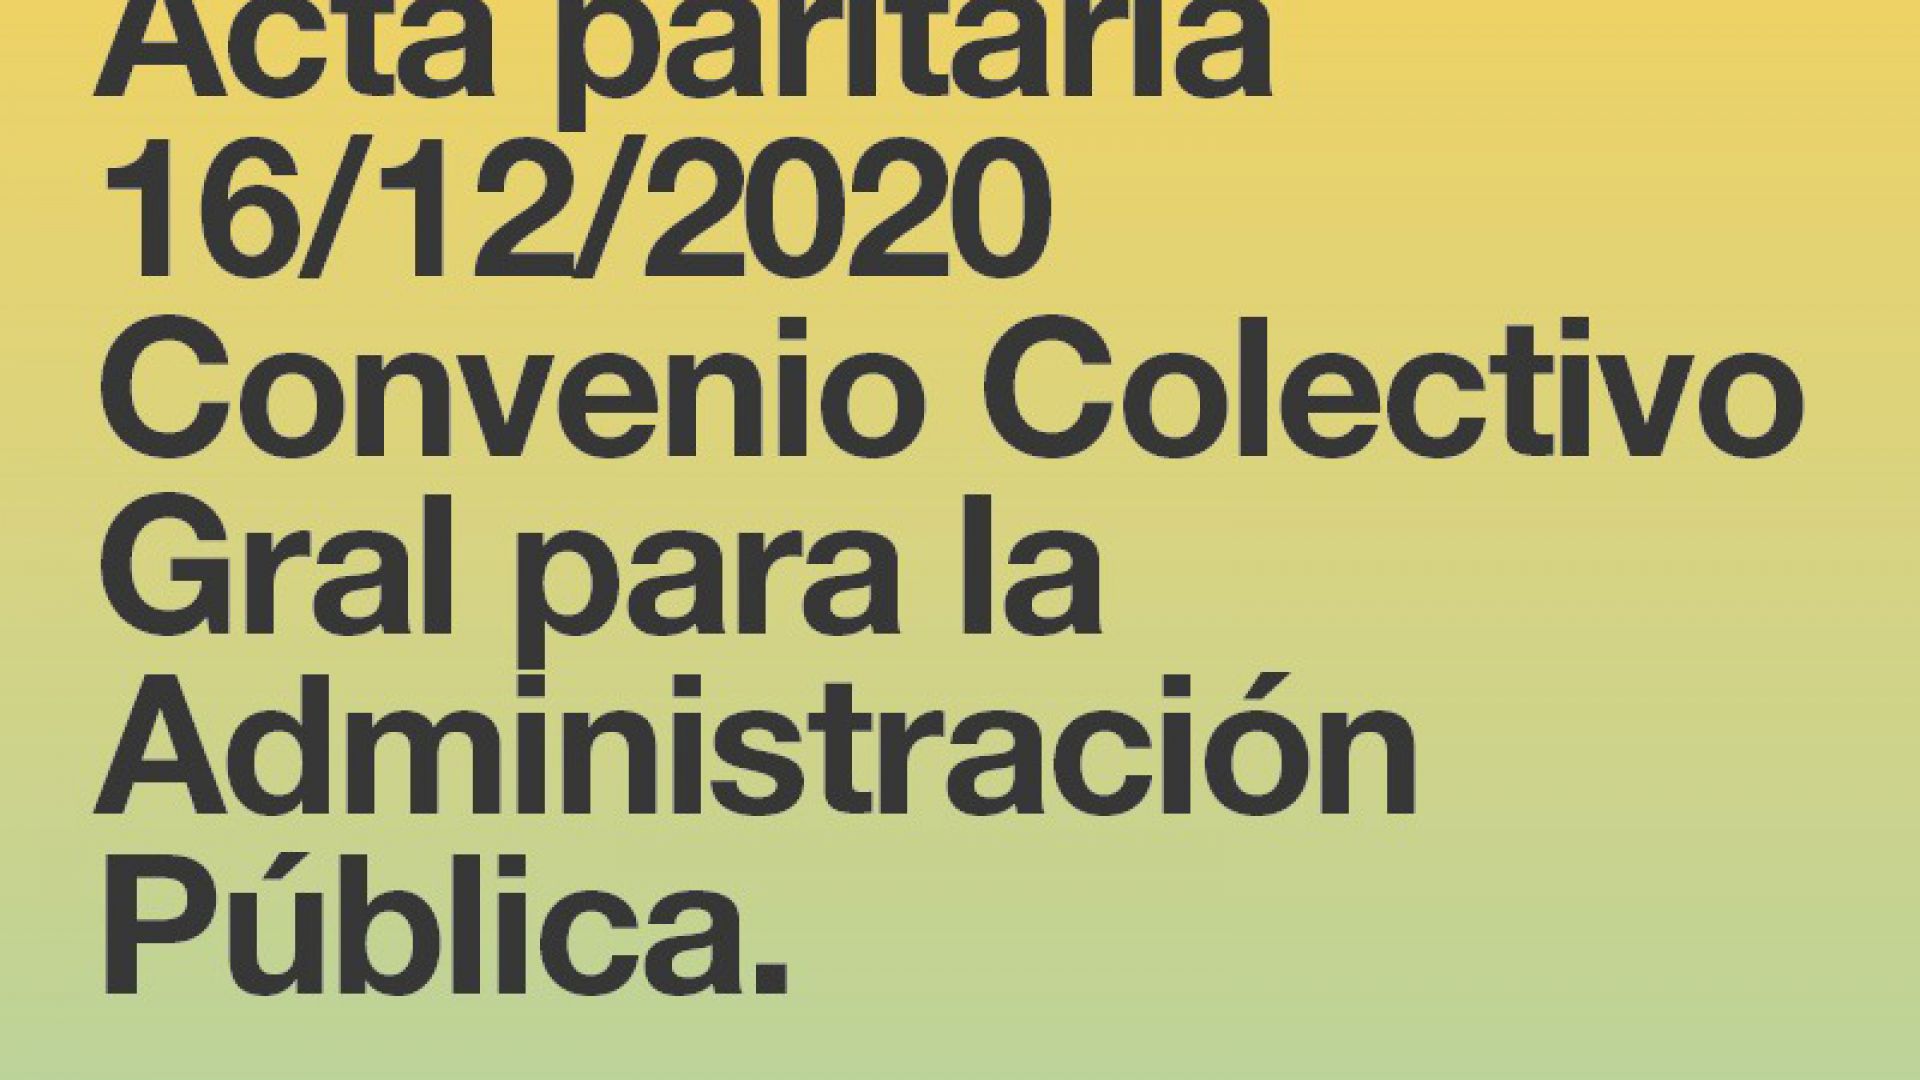 Acta paritaria del 16 de diciembre 2020  - Convenio Colectivo General para la Administración Pública.